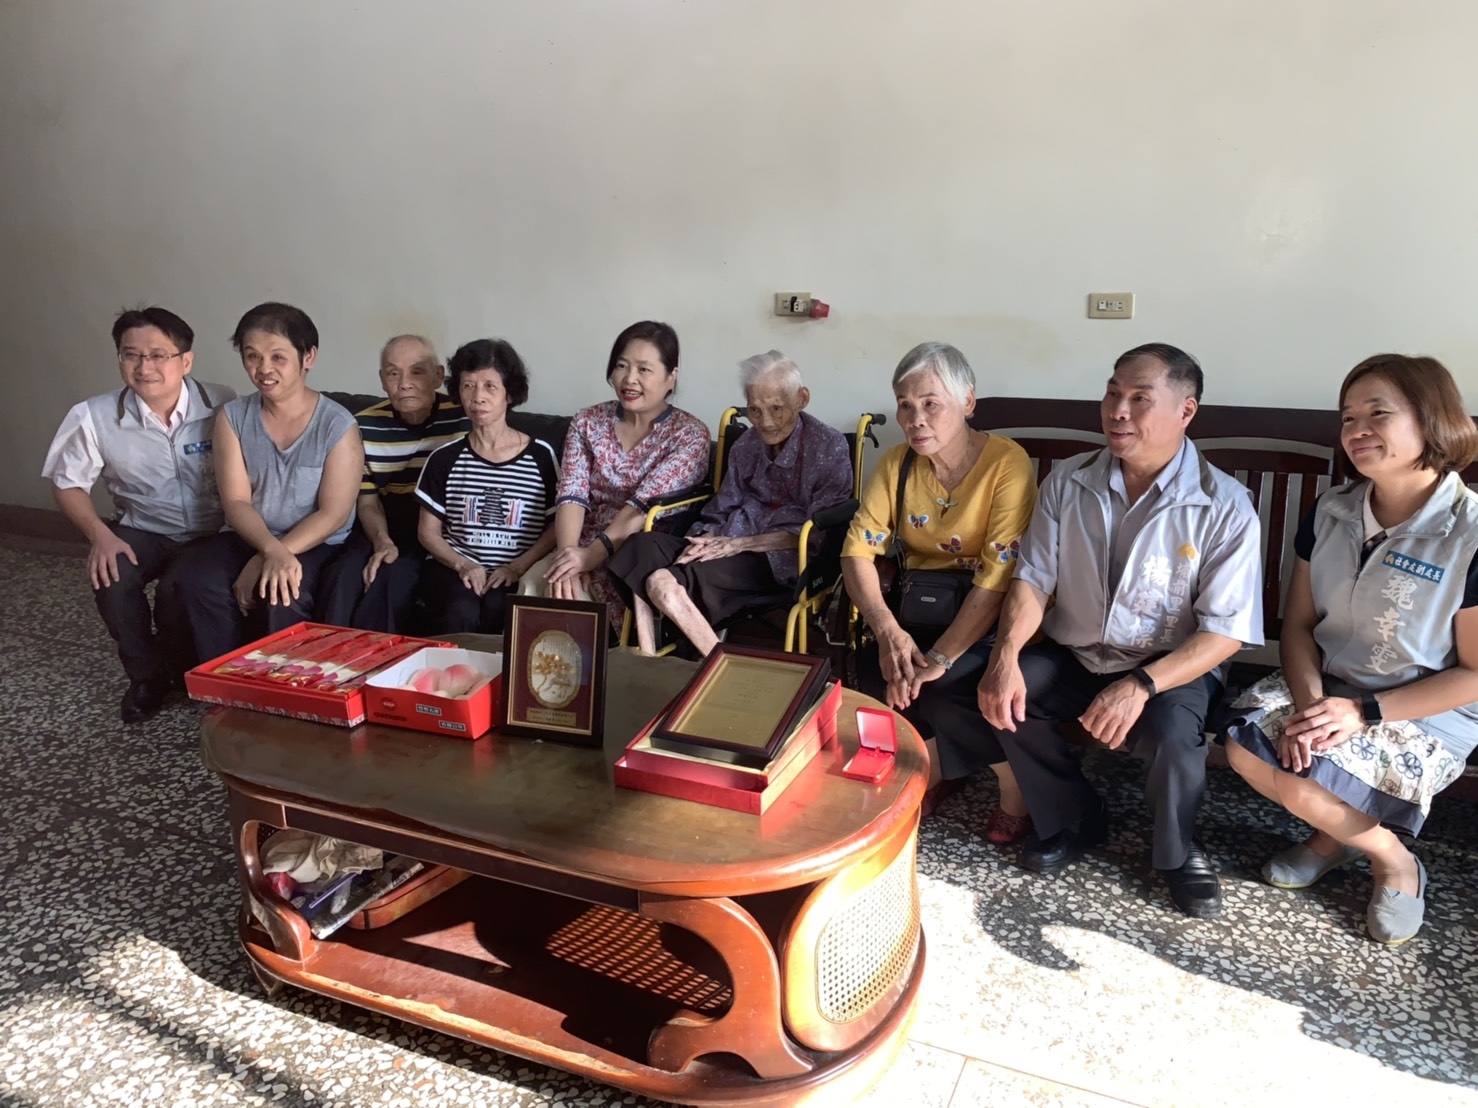 疼愛媽媽的副市長探訪香山區兩位百歲阿嬤，祝福人瑞們重陽佳節快樂